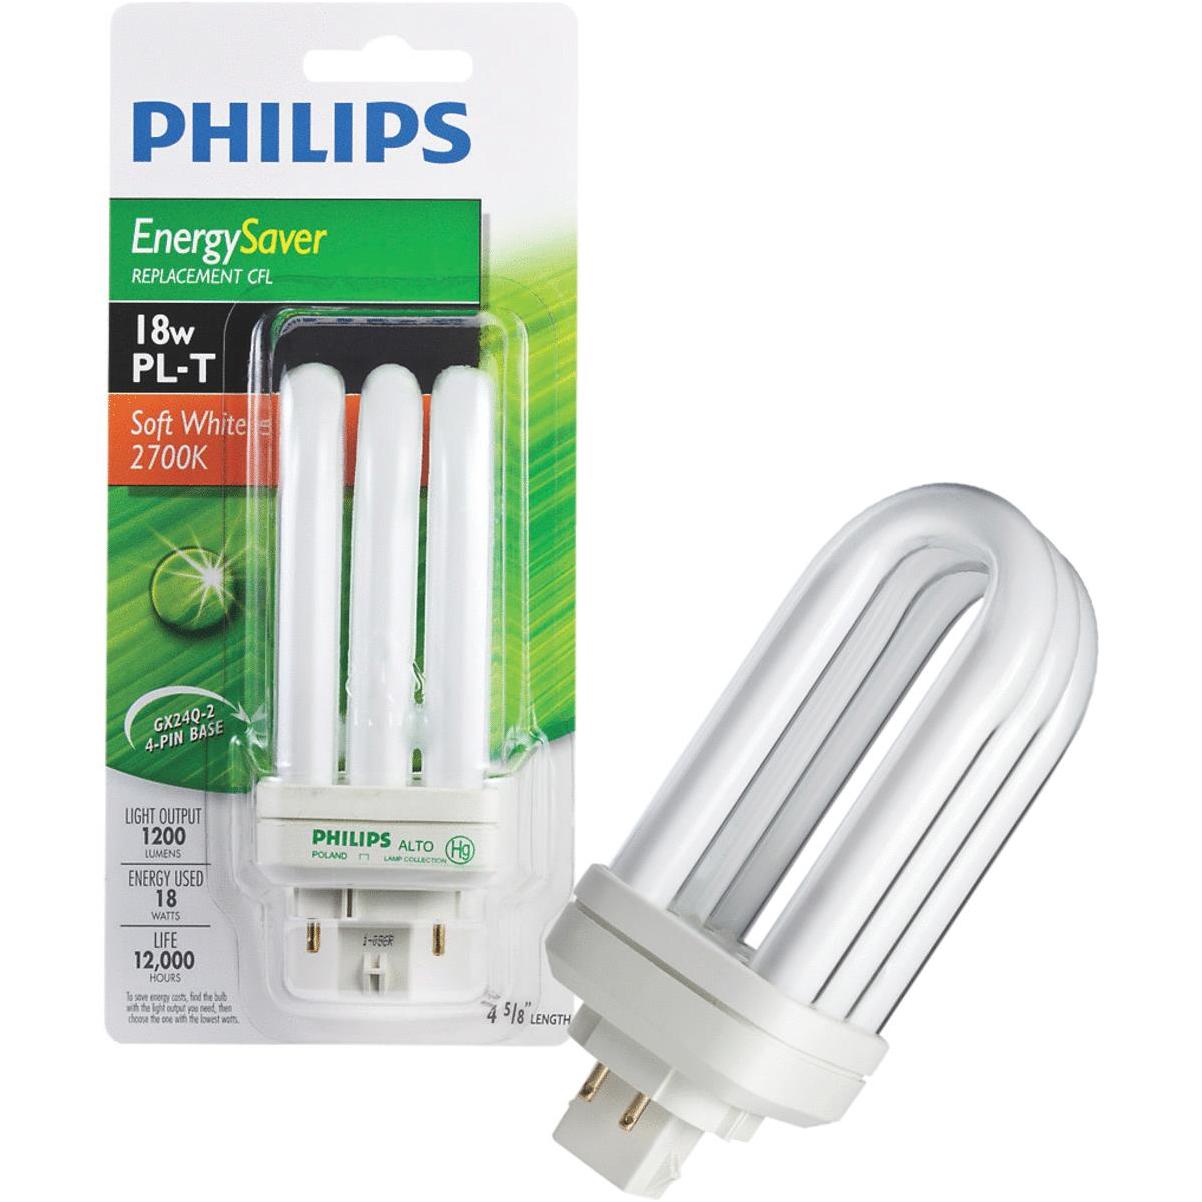 Филипс 75. Philips Lighting. Philips CFL economy. Ок Филипс.